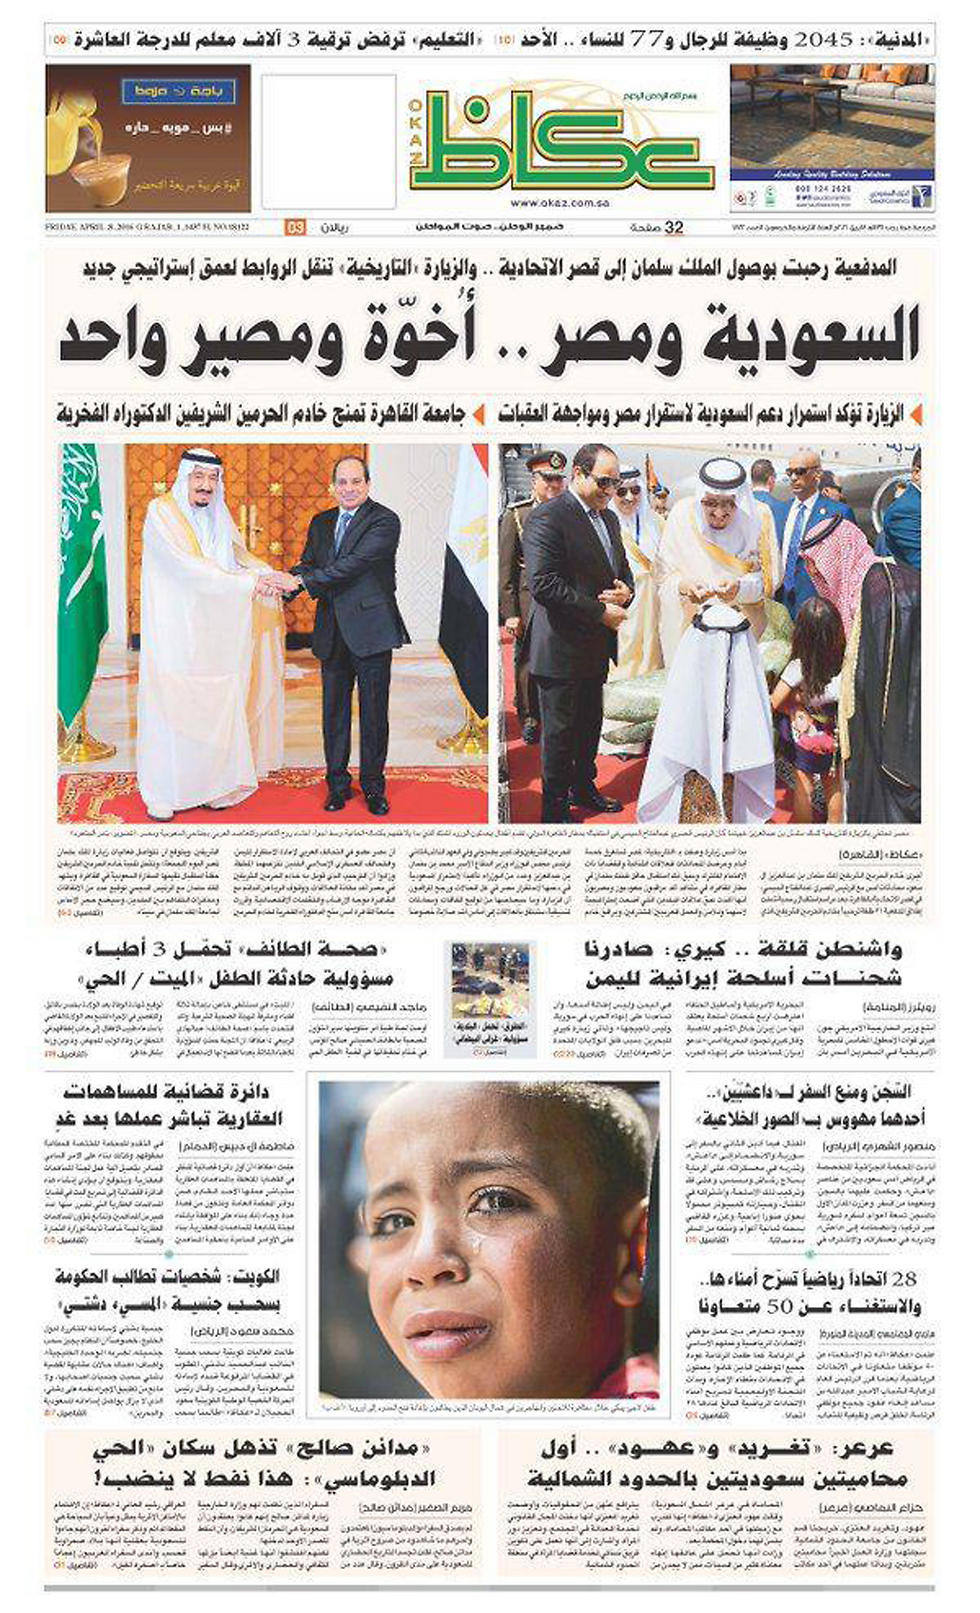 העיתון הסעודי אל-עוכאז: "סעודיה ומצרים - אחווה וגורל אחד" ()